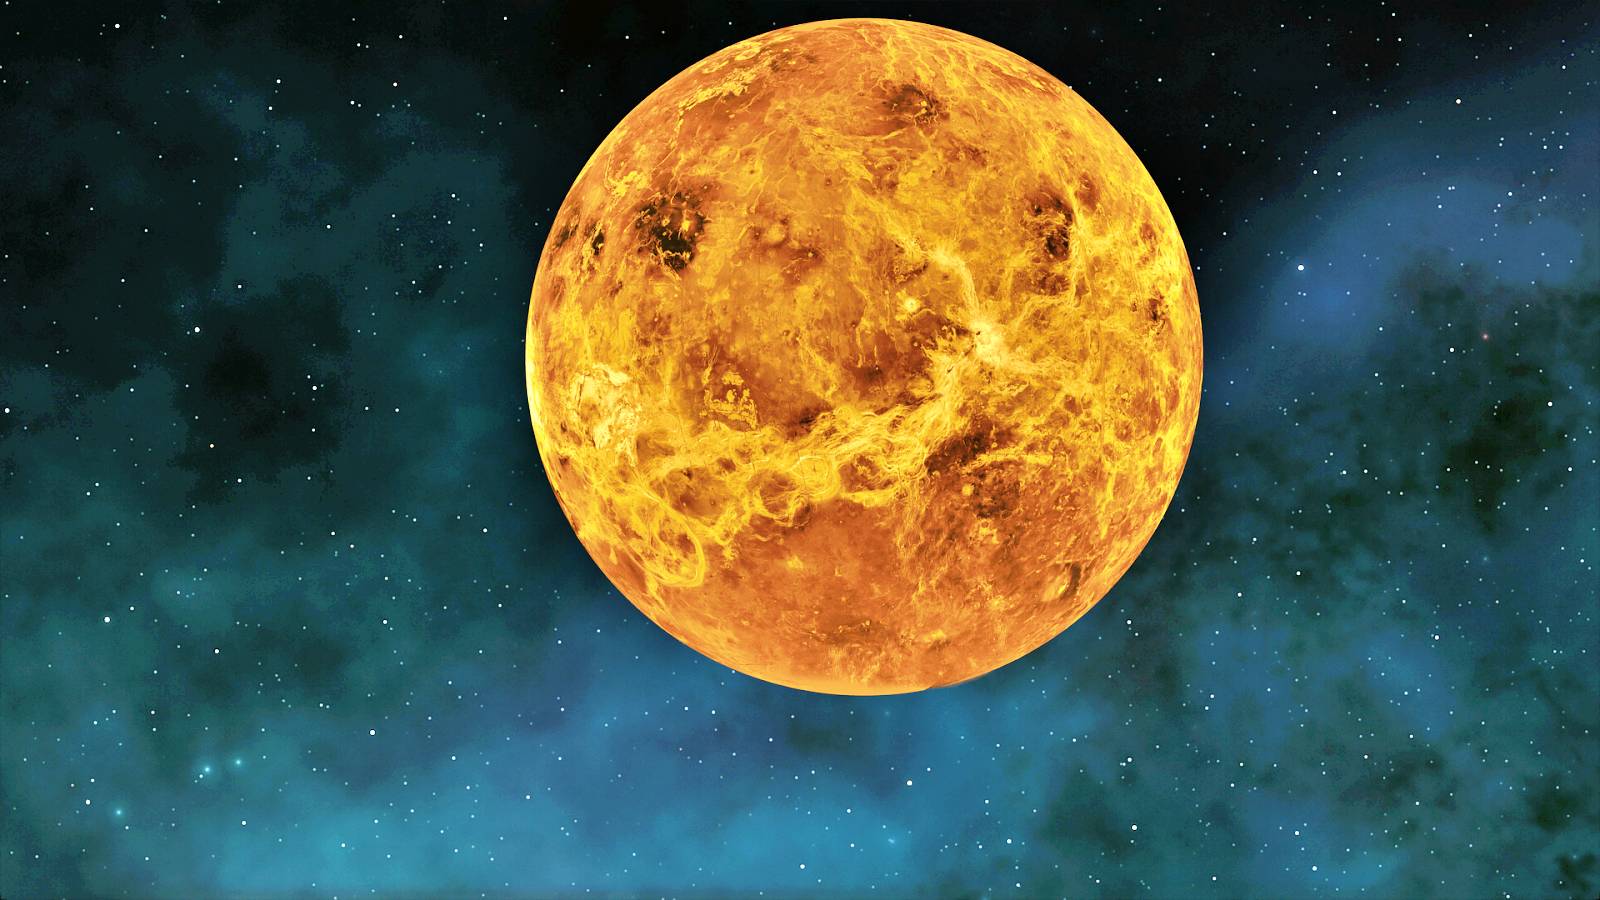 Venuspflanze: EIN BEEINDRUCKENDES NASA-Bild versetzt Menschen in Erstaunen